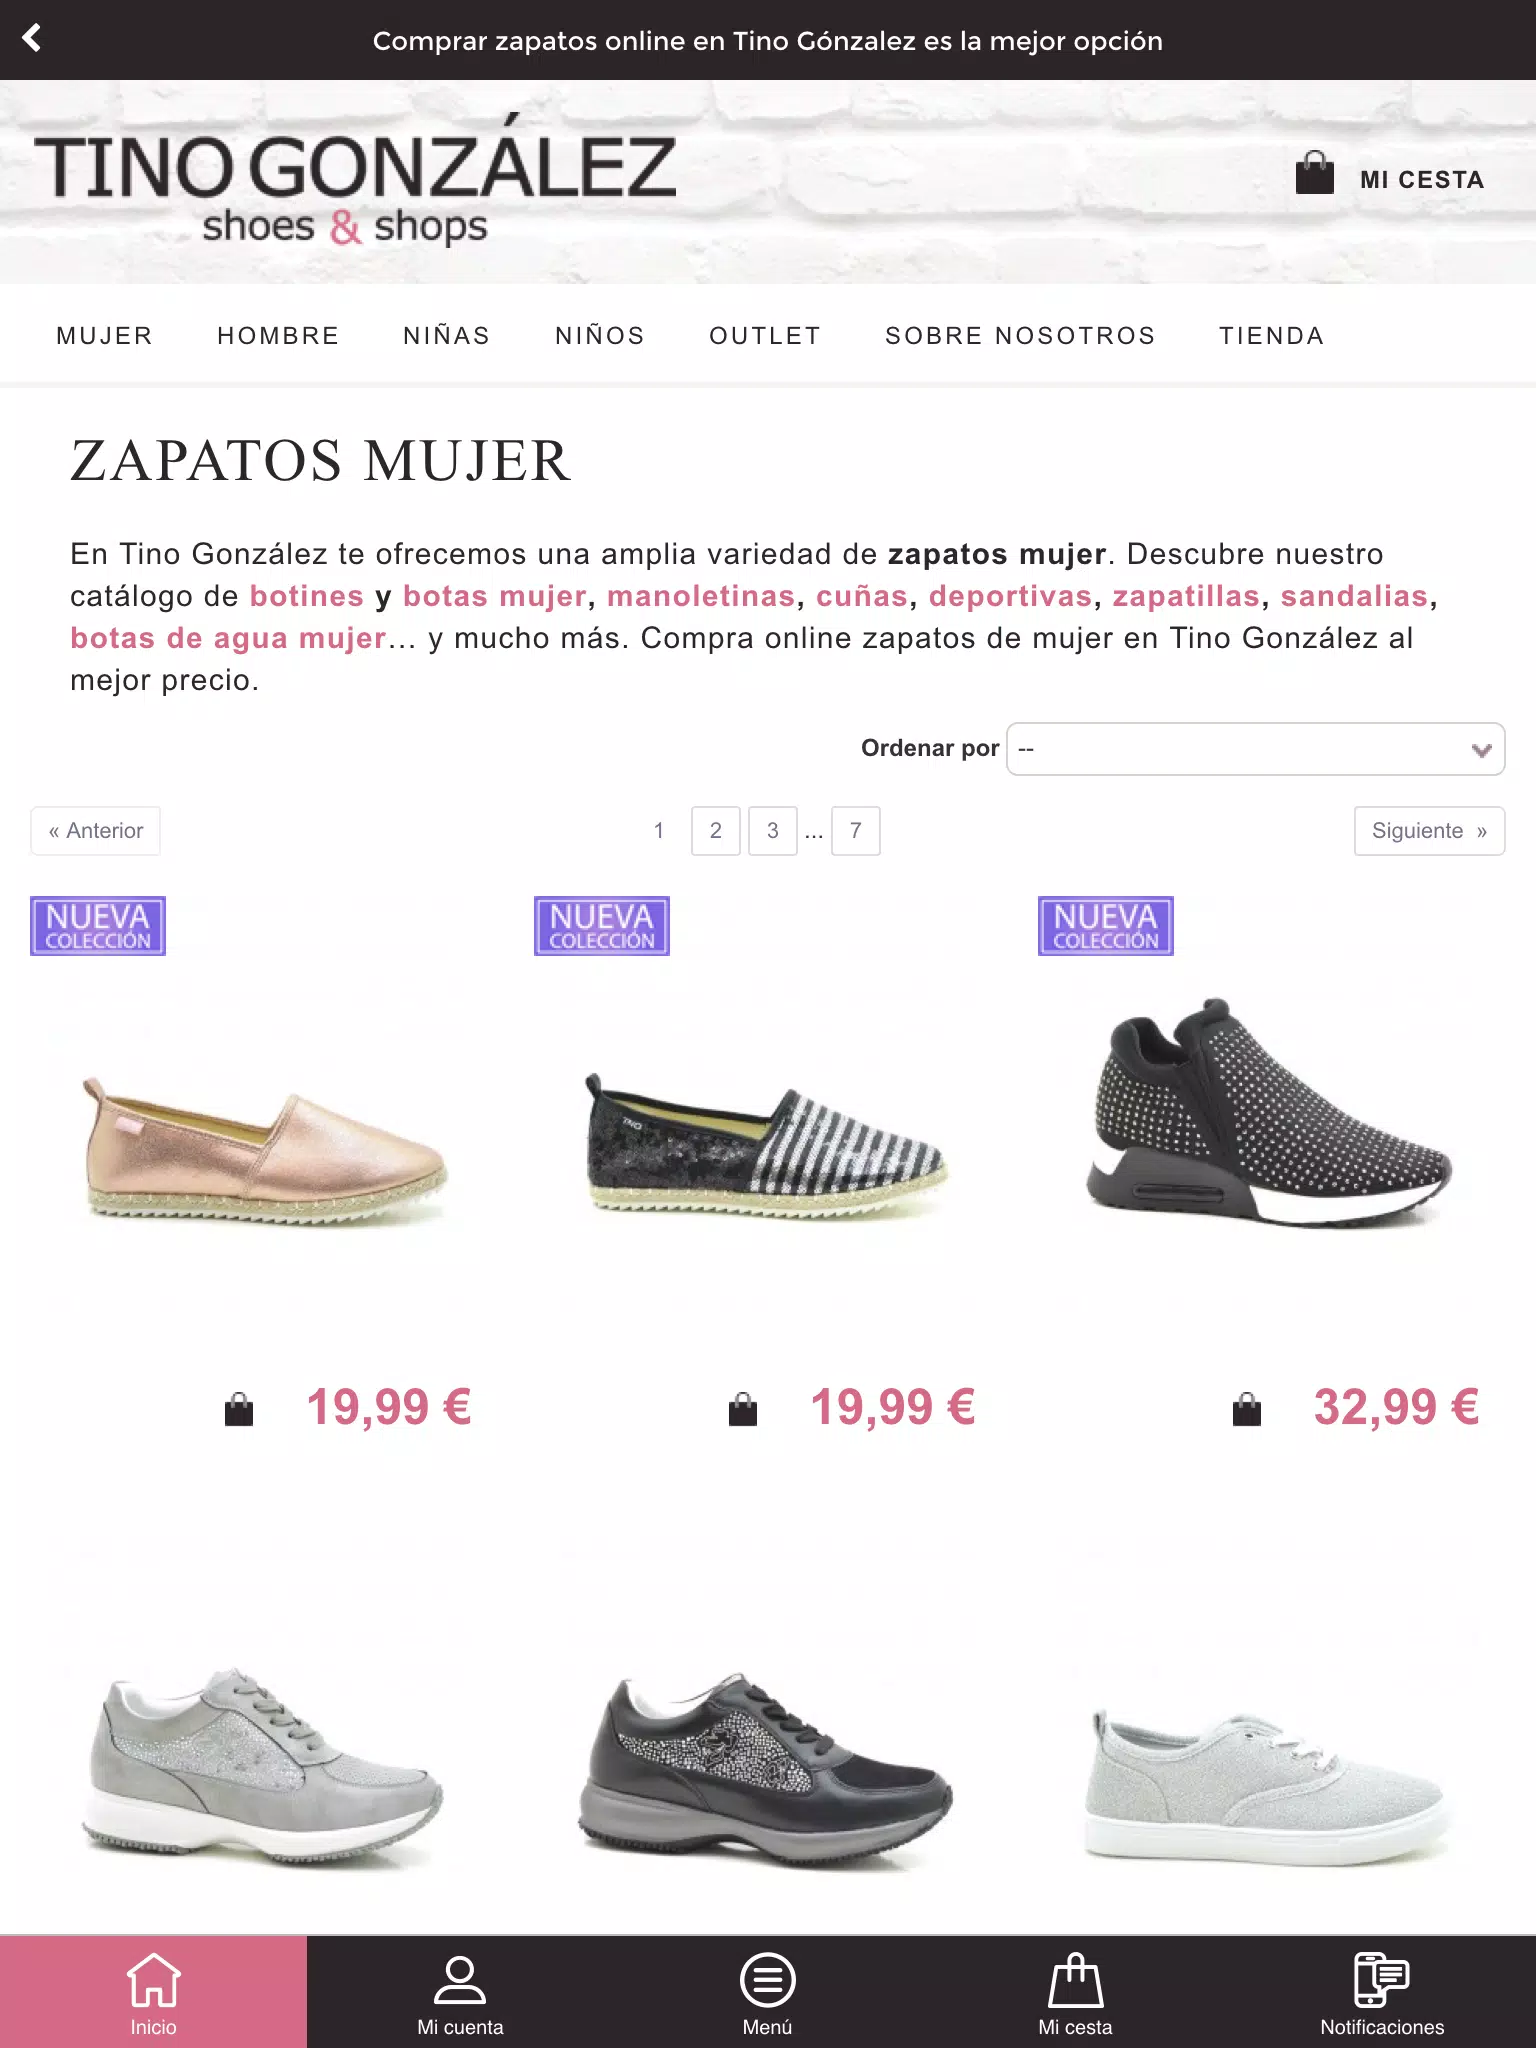 Tino González - Shop & Shoes Download